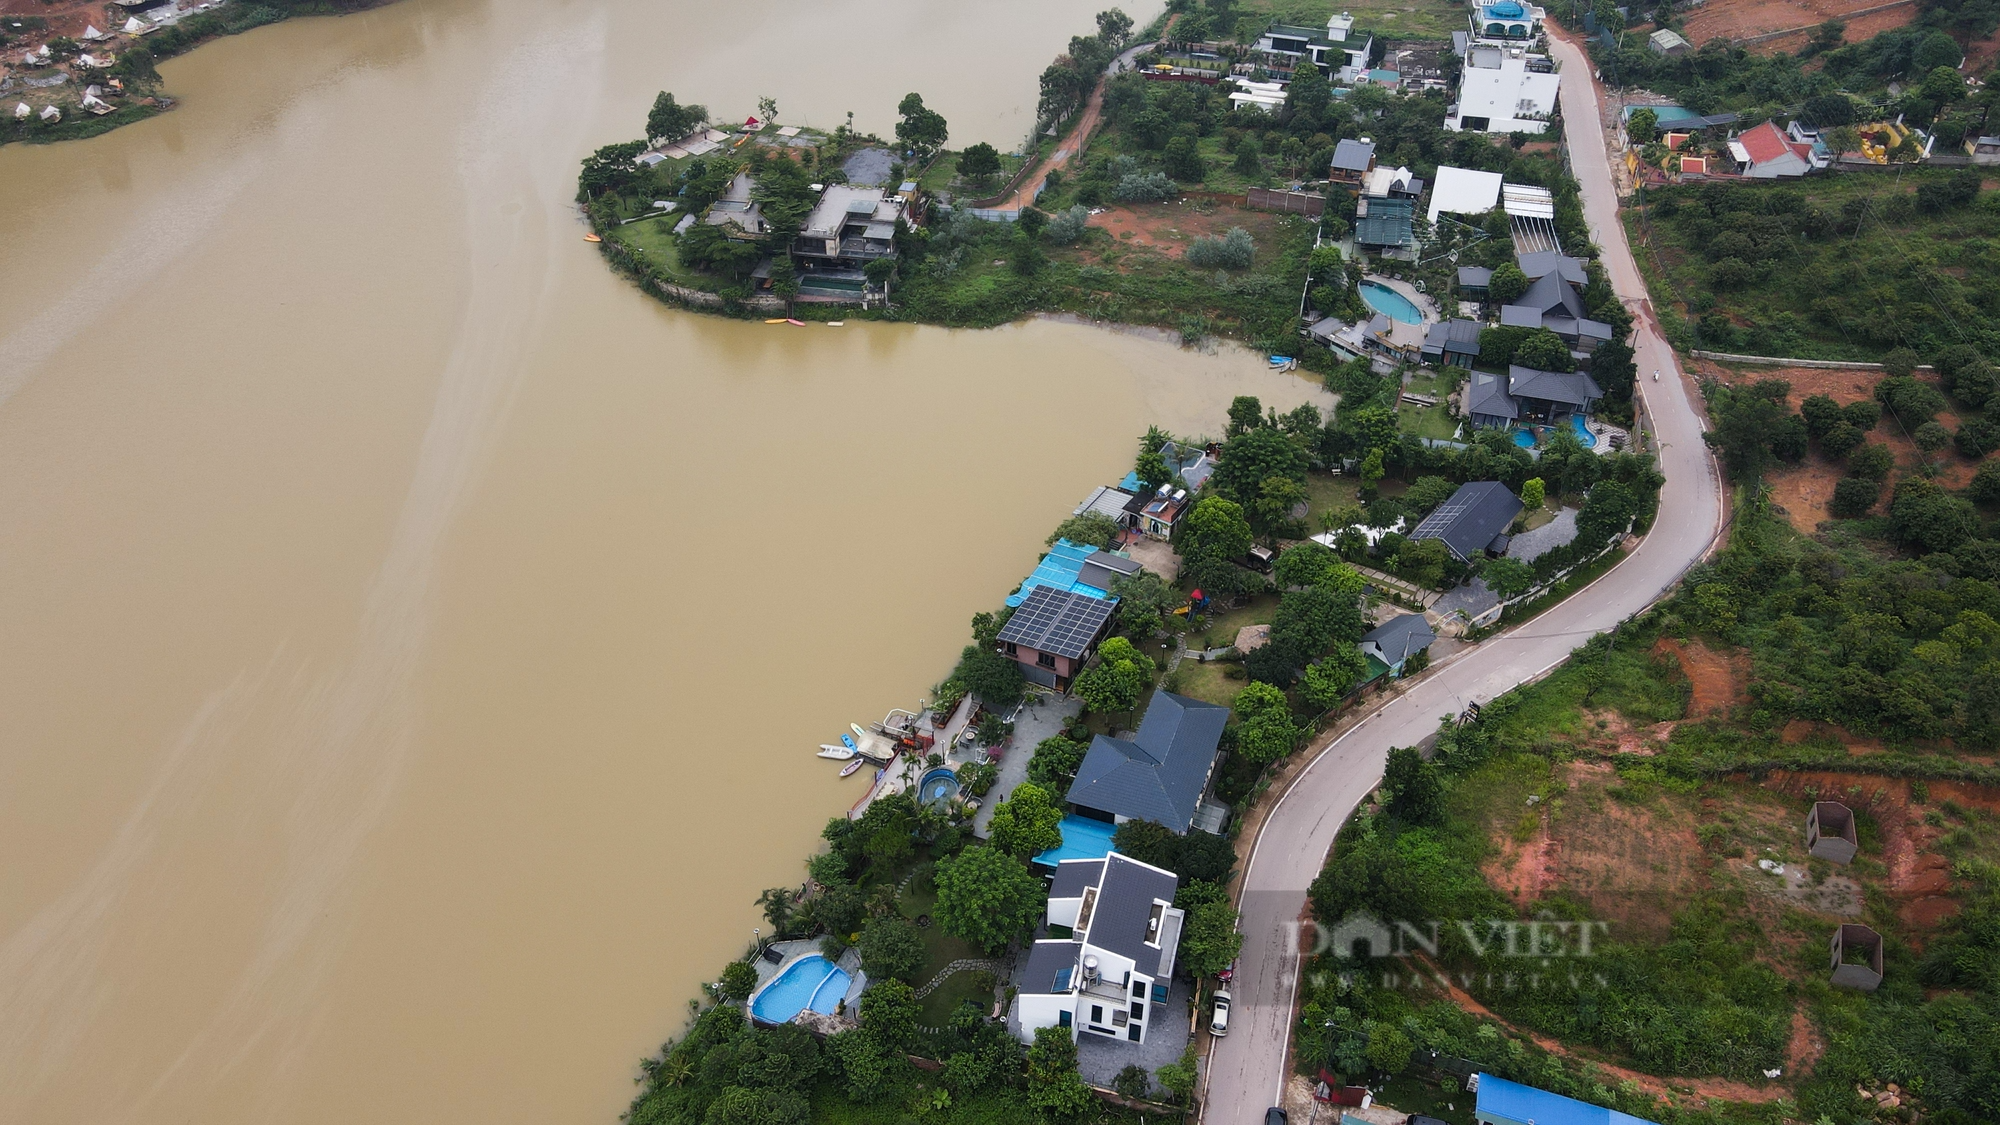 Hồ Đồng Đò huyện Sóc Sơn bị vay kín bởi homestay, khu nghỉ dưỡng - Ảnh 9.